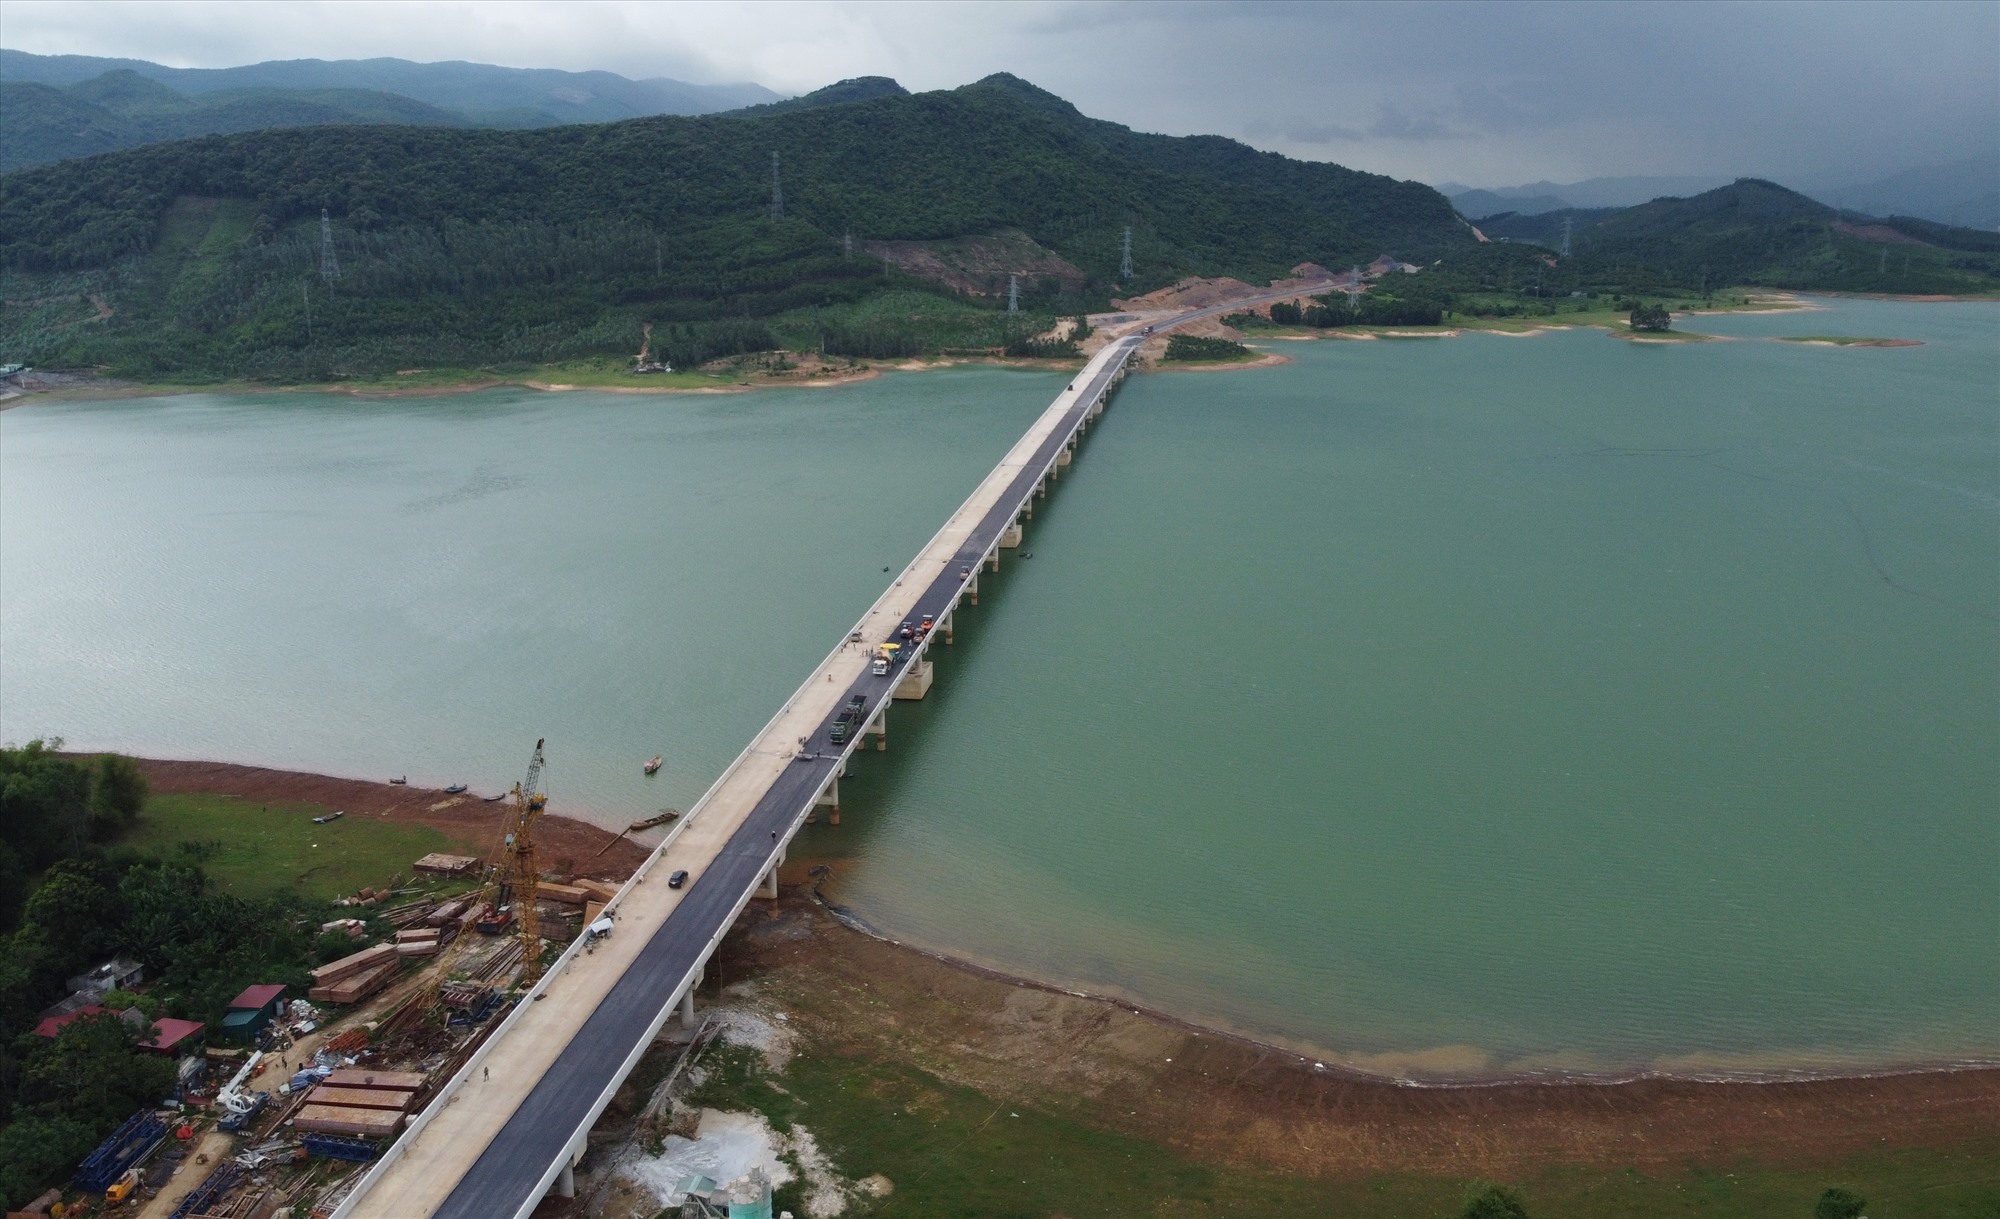 Được biết, trên tuyến cao tốc Quốc lộ 45 - Nghi Sơn có tổng số 18 cây cầu lớn nhỏ. Trong đó, cầu vượt hồ Yên Mỹ (qua huyện Nông Cống) dài nhất (gần 1km), với giá trị xây lắp 240 tỉ đồng. Ảnh: Quách Du